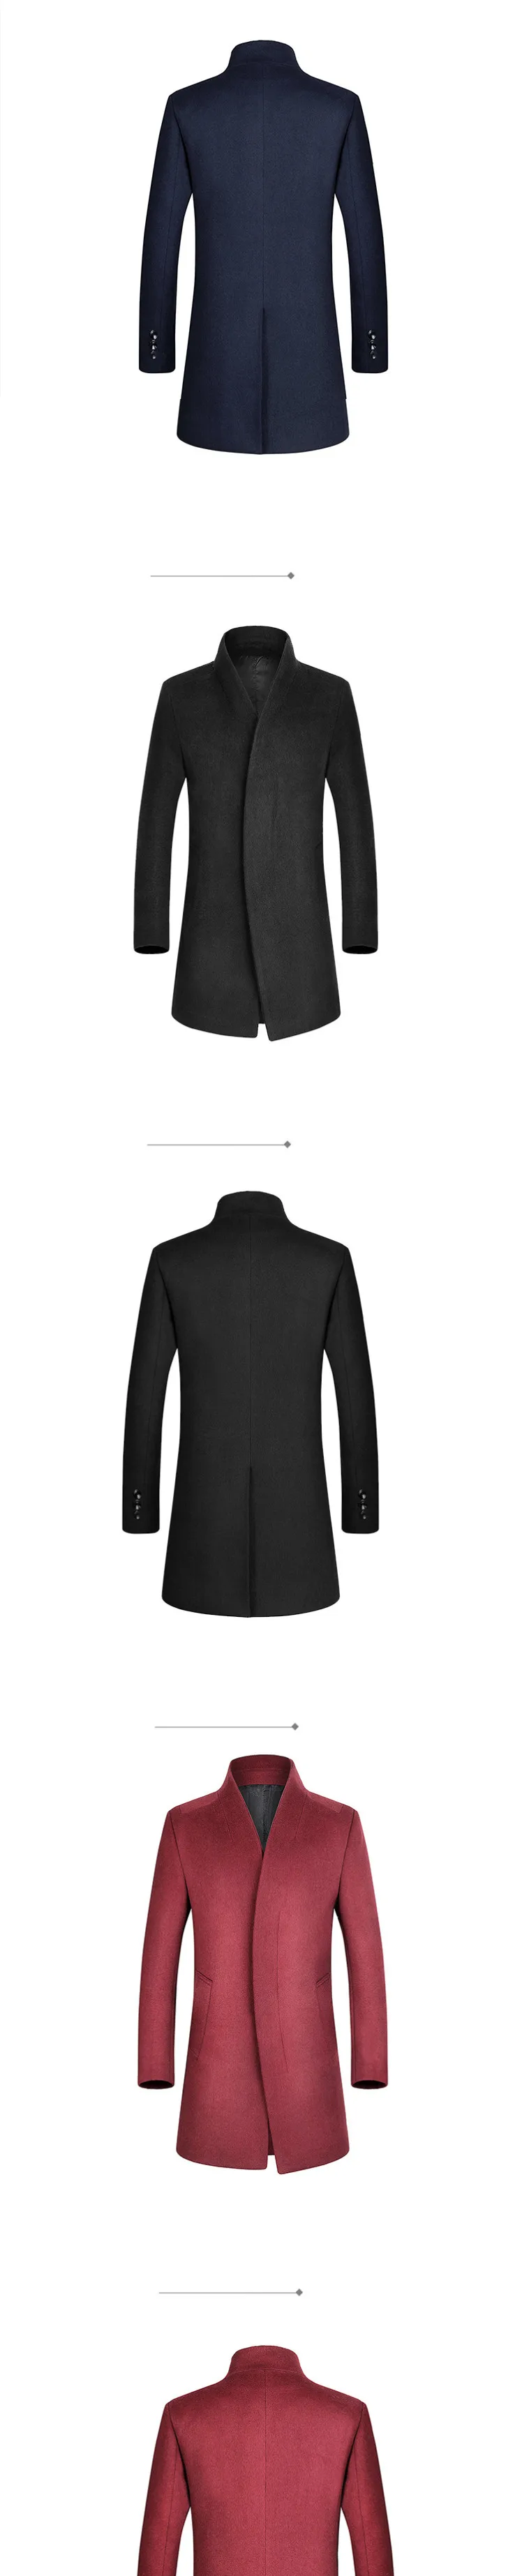 MRMT 2018 бренд Для мужчин одежда зимнее шерстяное пальто Повседневное шерстяное пальто для мужской пиджак верхняя одежда Костюмы Гар Для